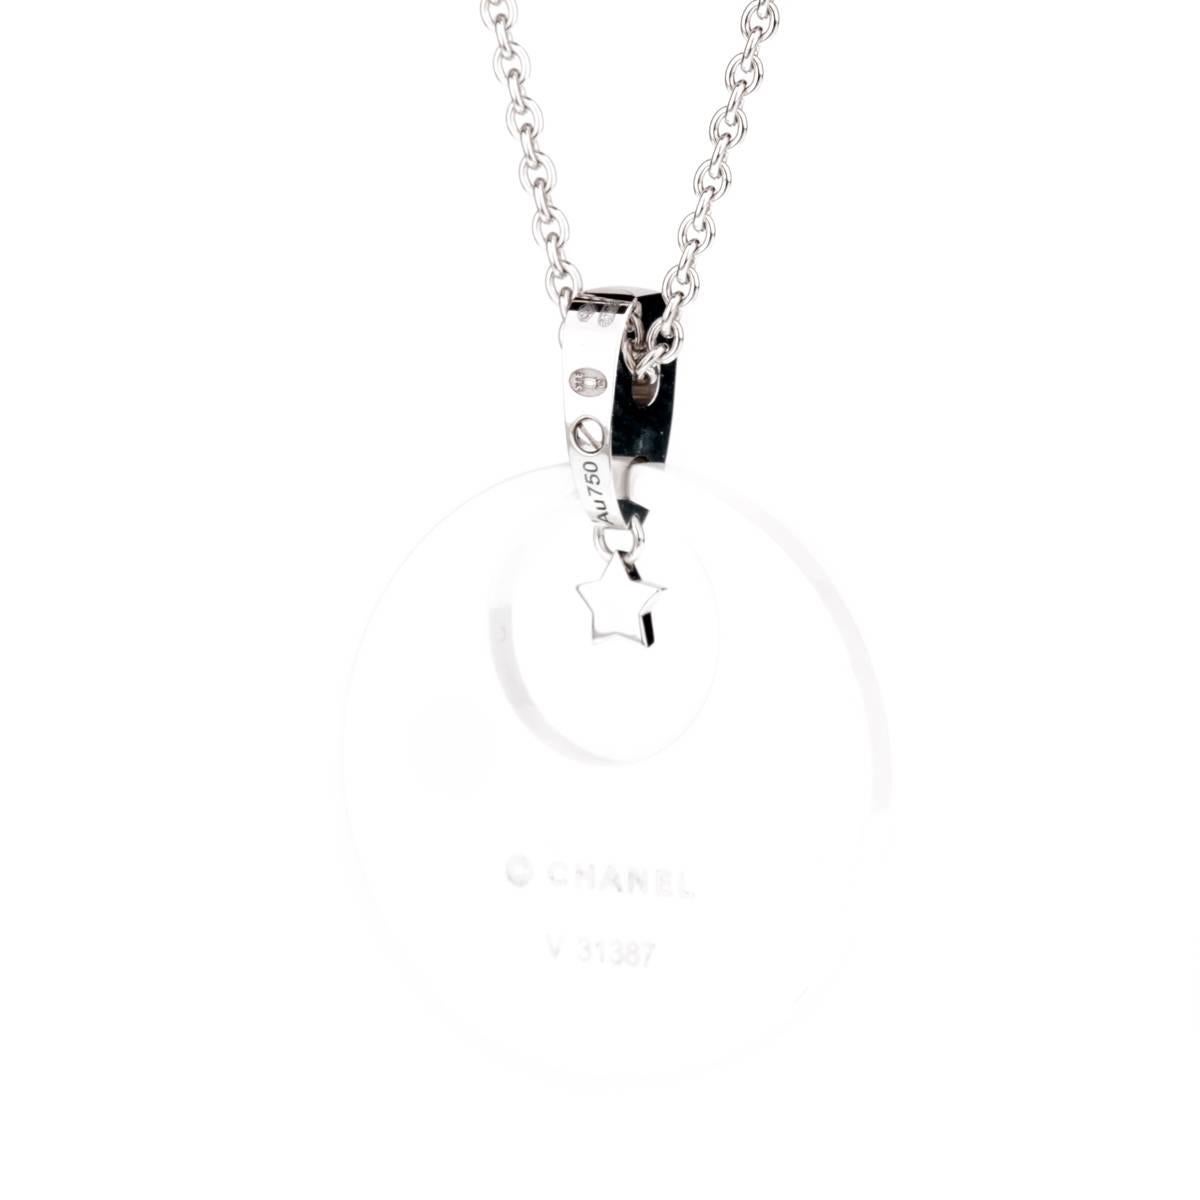 Collier emblématique de Chanel, issu de la collection Brilliante, présentant un éblouissant déploiement de diamants ronds de taille brillant, sertis dans de l'or blanc 18k et de la céramique.

Longueur du collier : 16